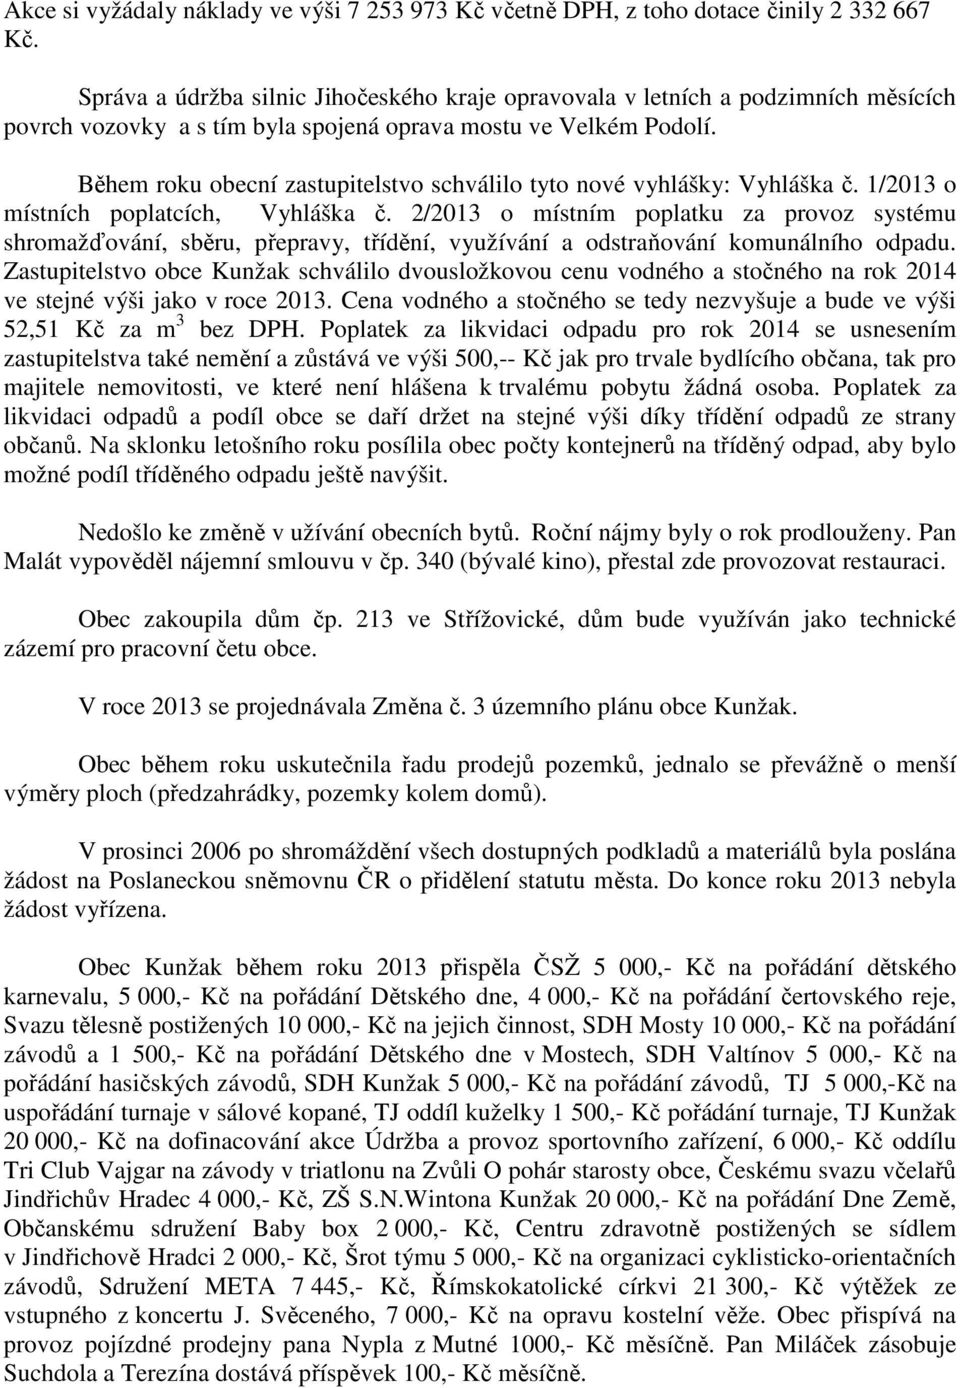 Během roku obecní zastupitelstvo schválilo tyto nové vyhlášky: Vyhláška č. 1/2013 o místních poplatcích, Vyhláška č.